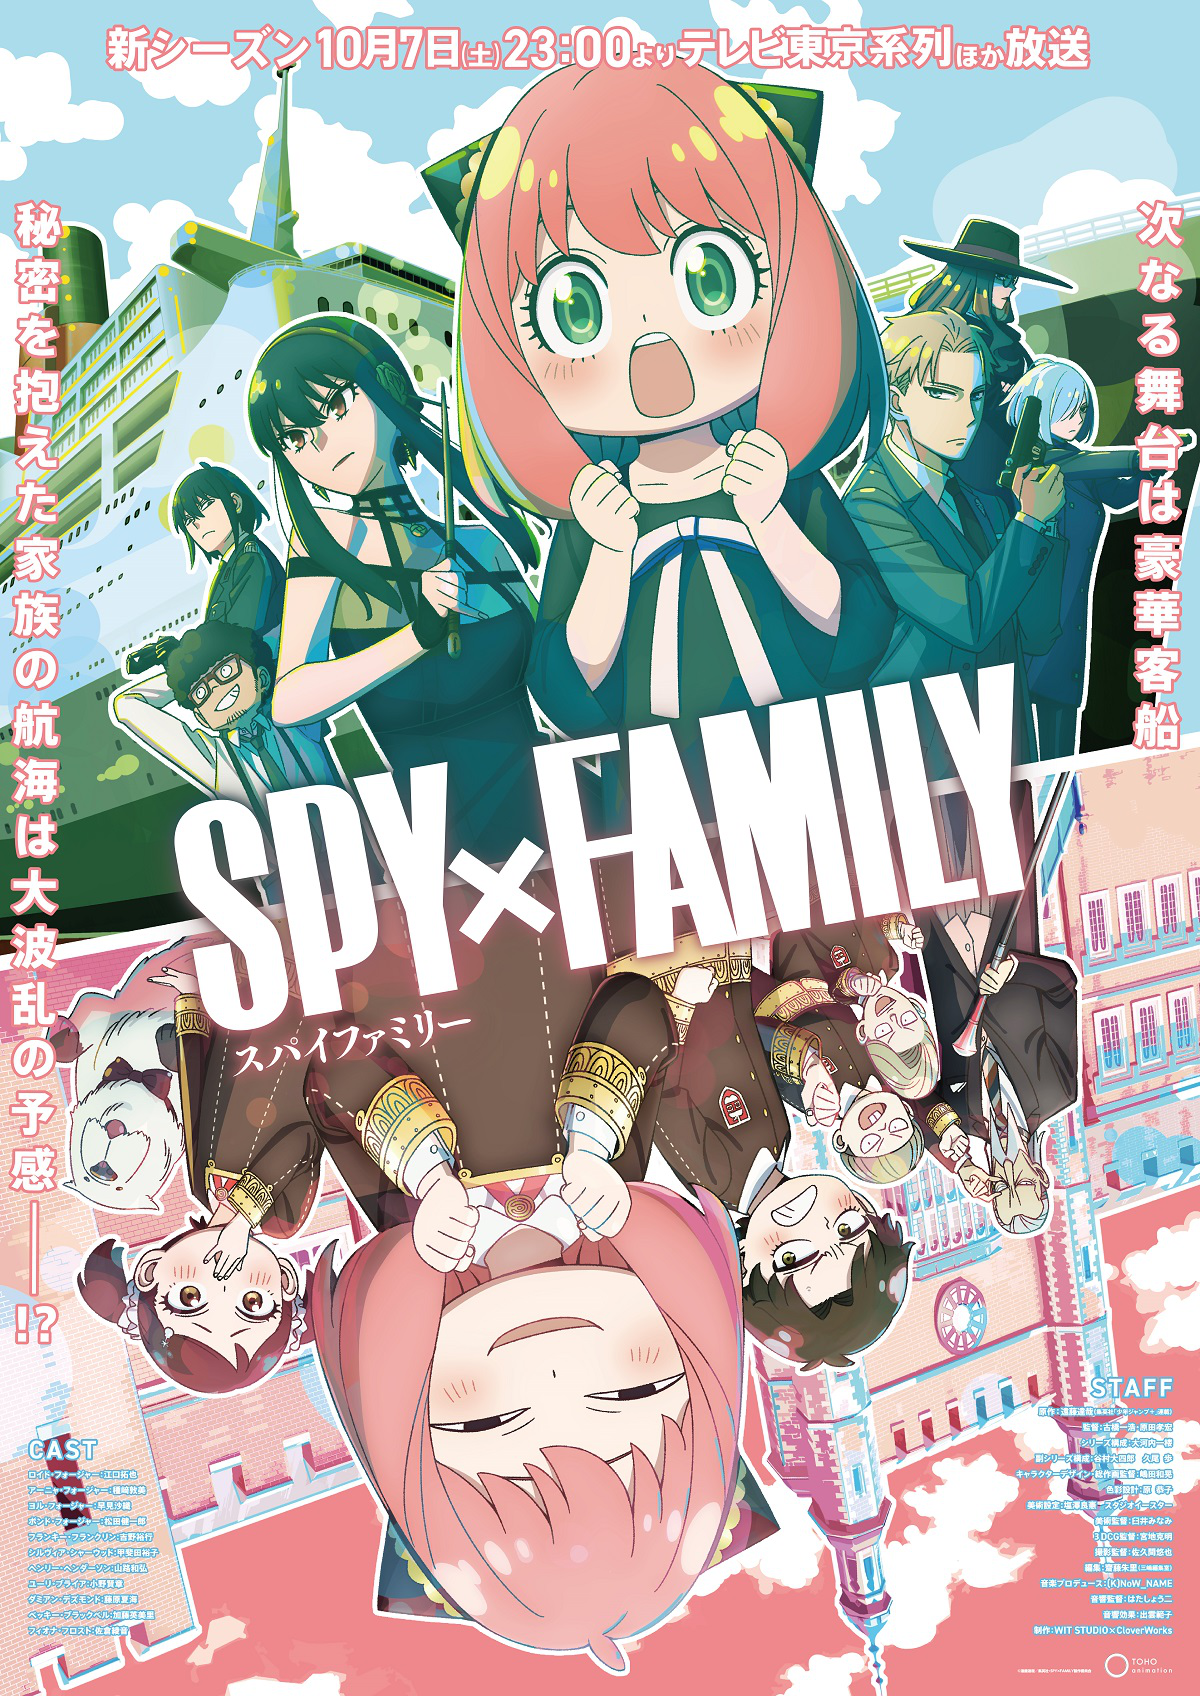 SPY x FAMILY Season 2 | Spy x Family Wiki | Fandom